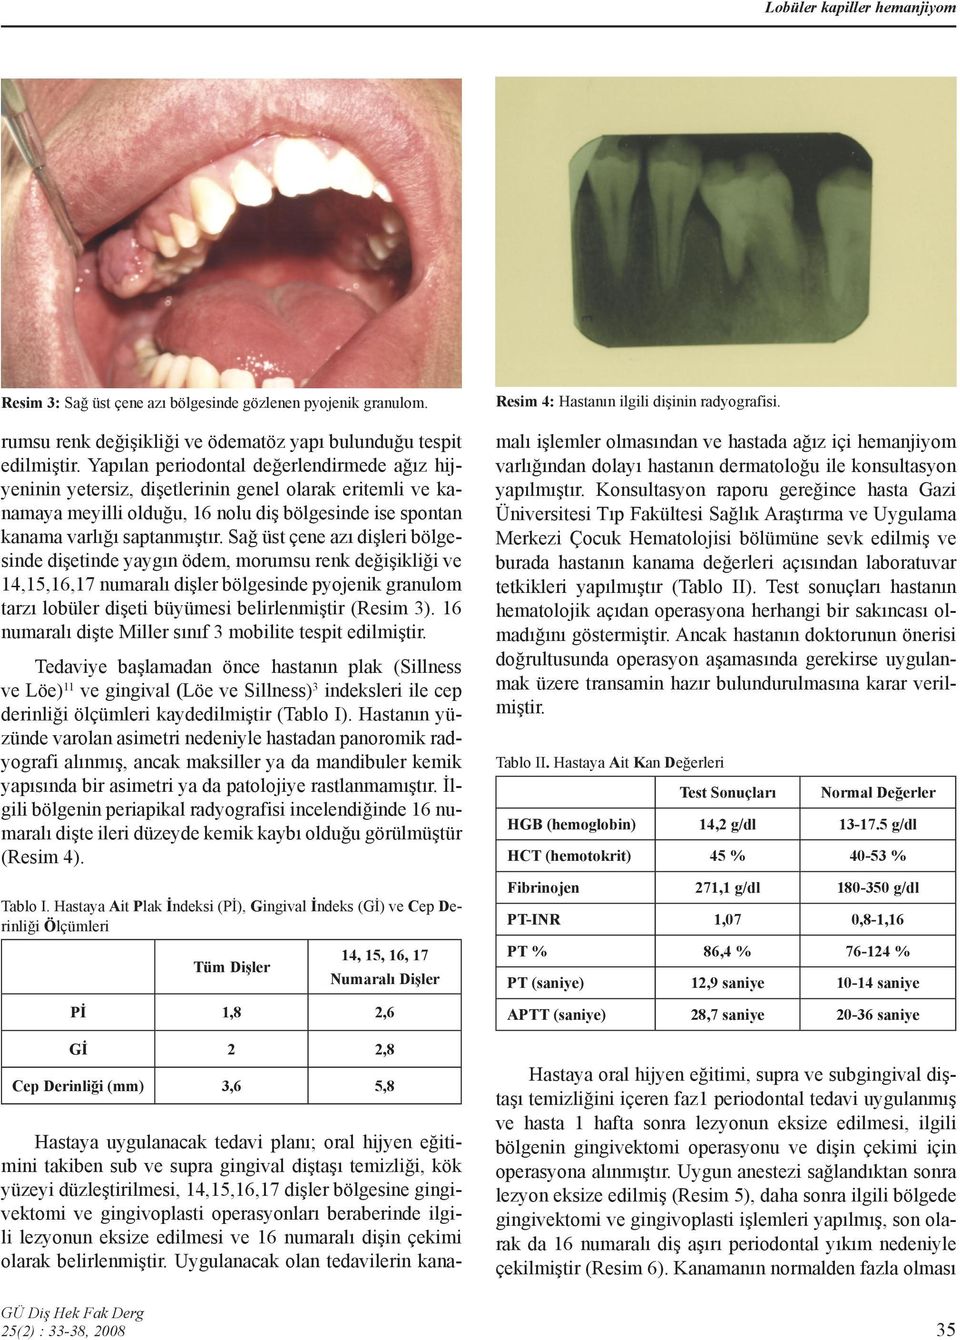 Sağ üst çene azı dişleri bölgesinde dişetinde yaygın ödem, morumsu renk değişikliği ve 14,15,16,17 numaralı dişler bölgesinde pyojenik granulom tarzı lobüler dişeti büyümesi belirlenmiştir (Resim 3).